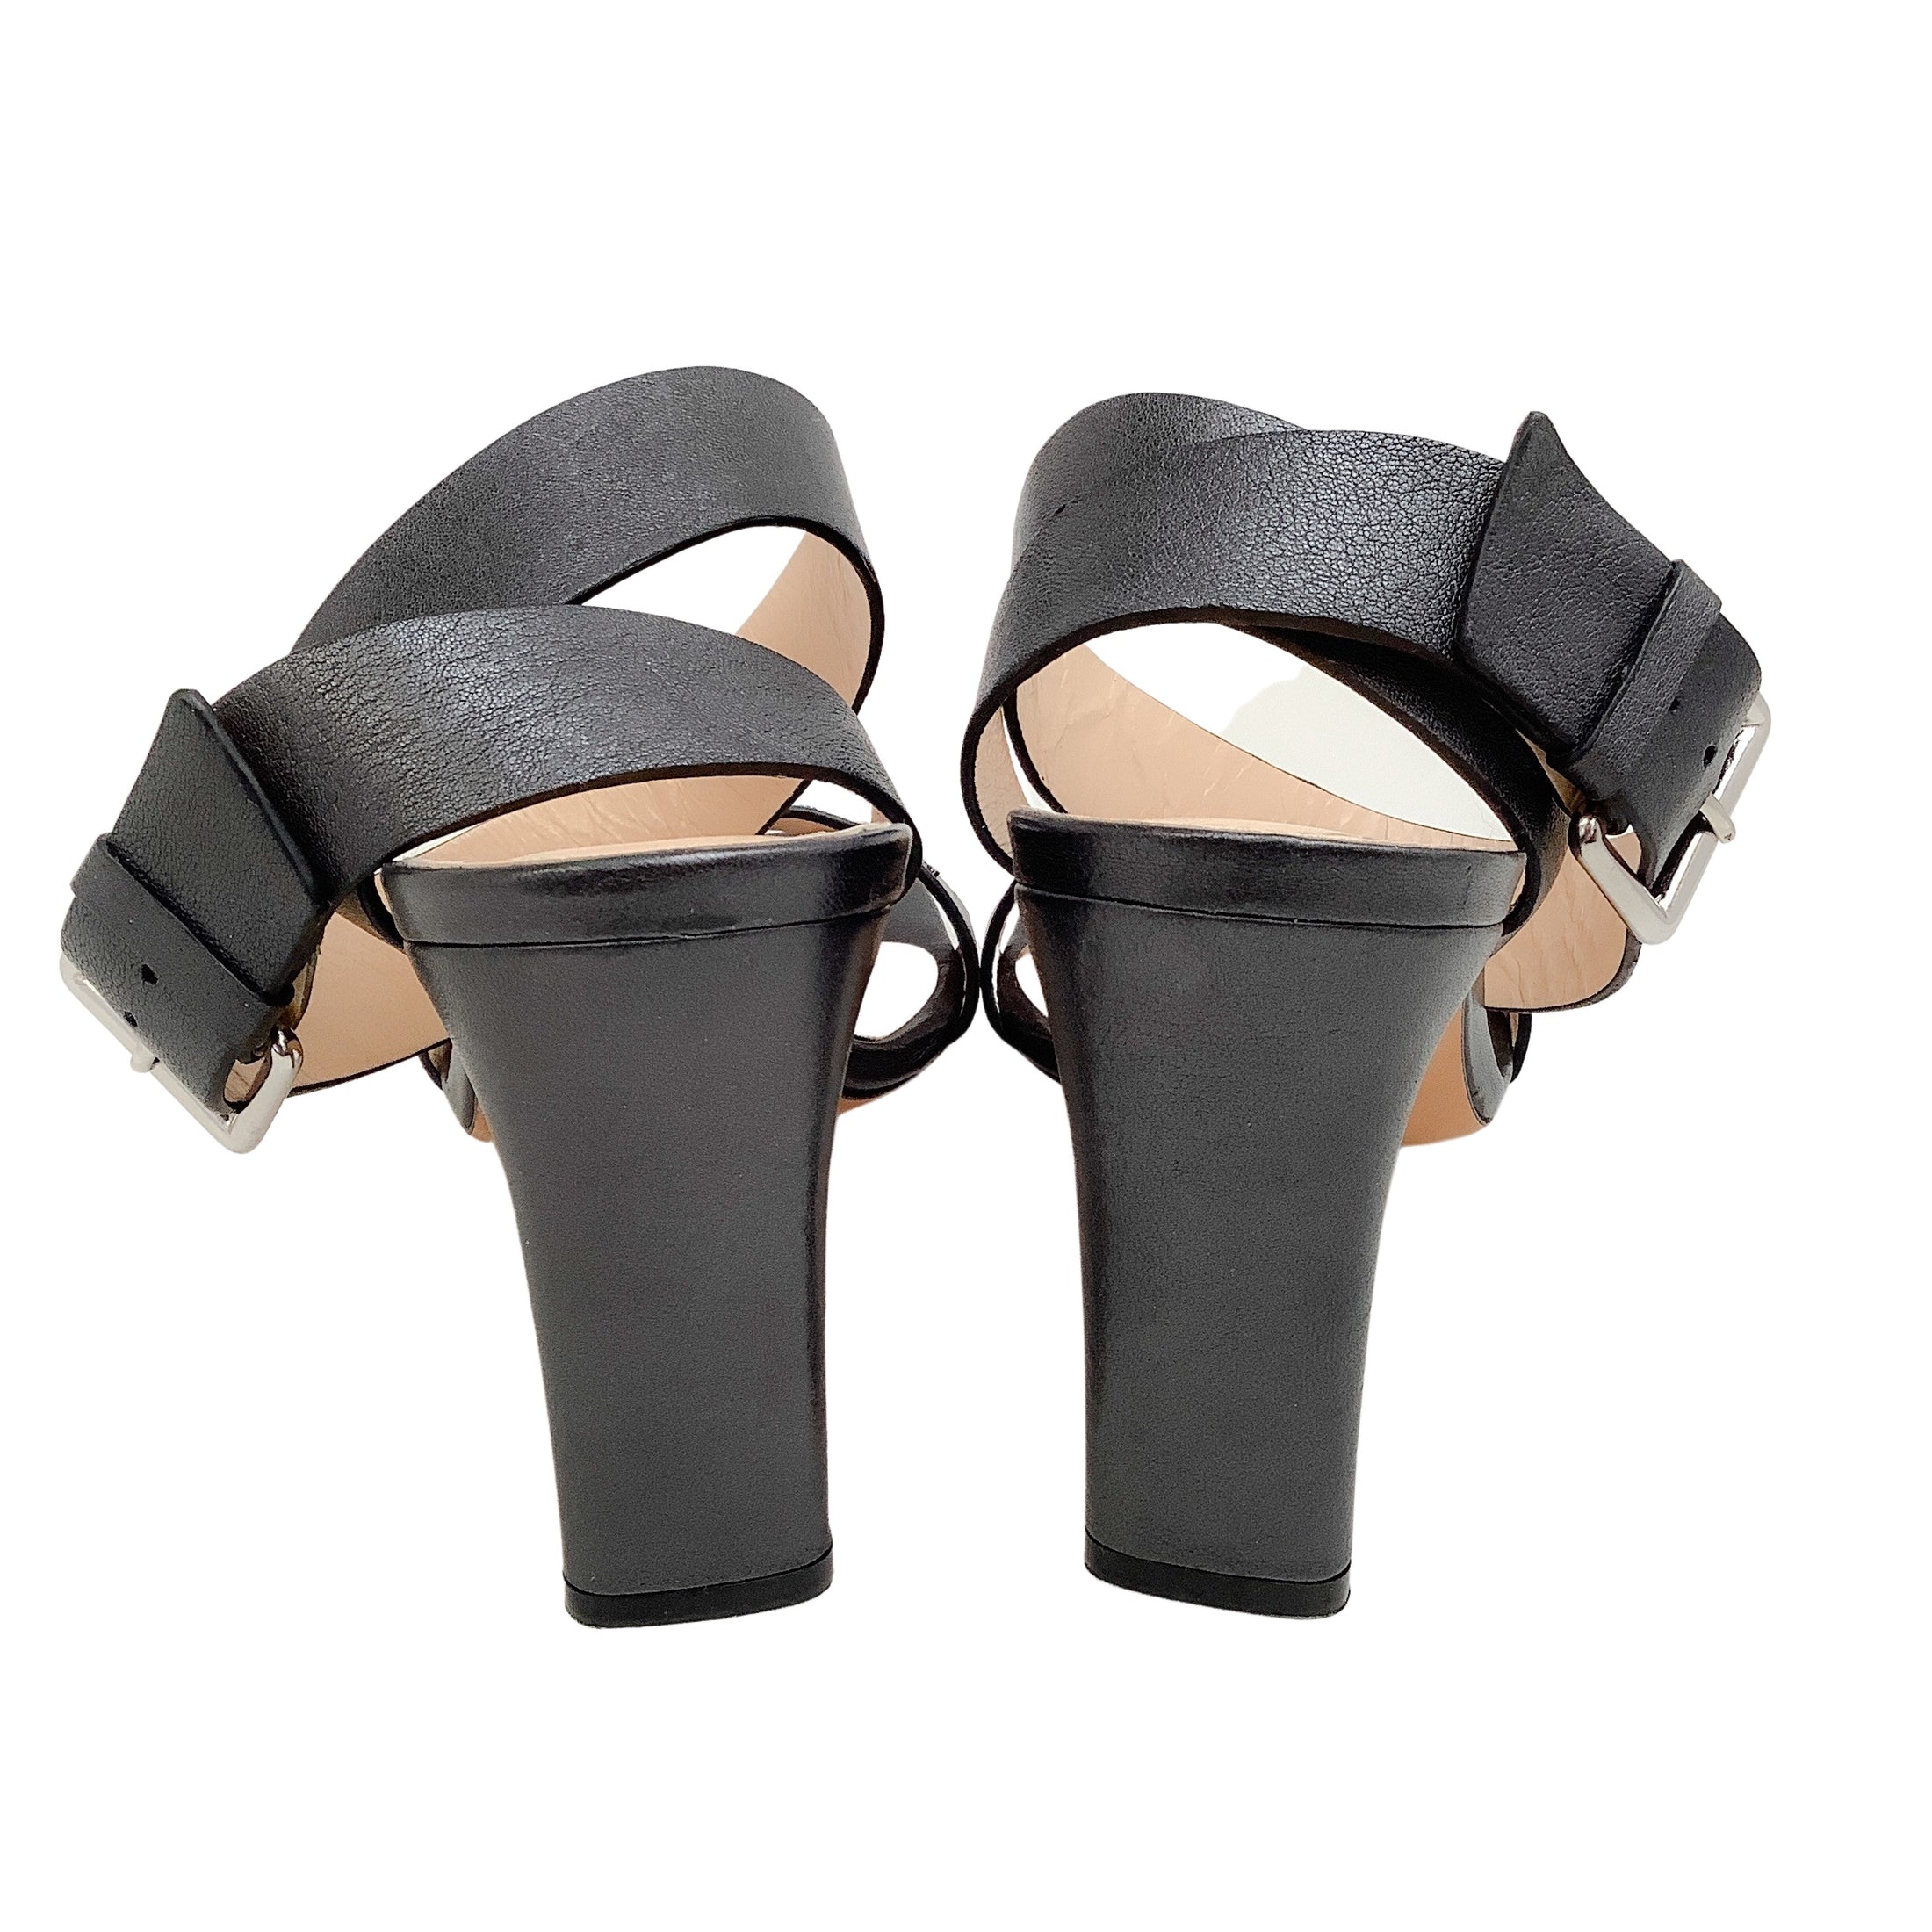 IRO Black Leather Mayami Silver Studded Sandals